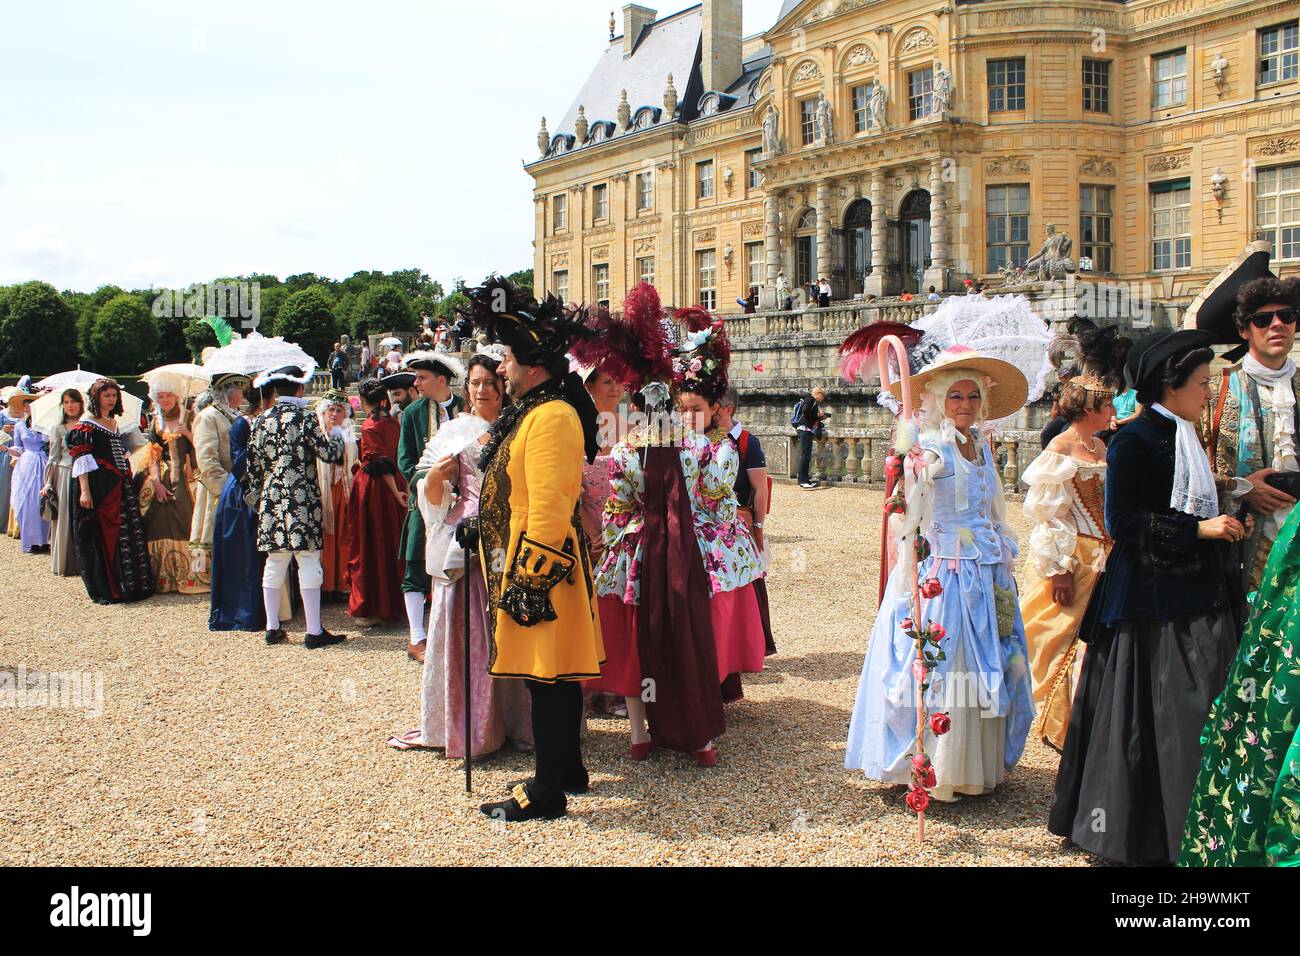 Les visiteurs des costumes d'époque du 17th siècle s'alignent pour un concours de costumes pendant la journée du Grand siècle au Château Vaux-le-Vicomte, situé à 34 km de Paris Banque D'Images